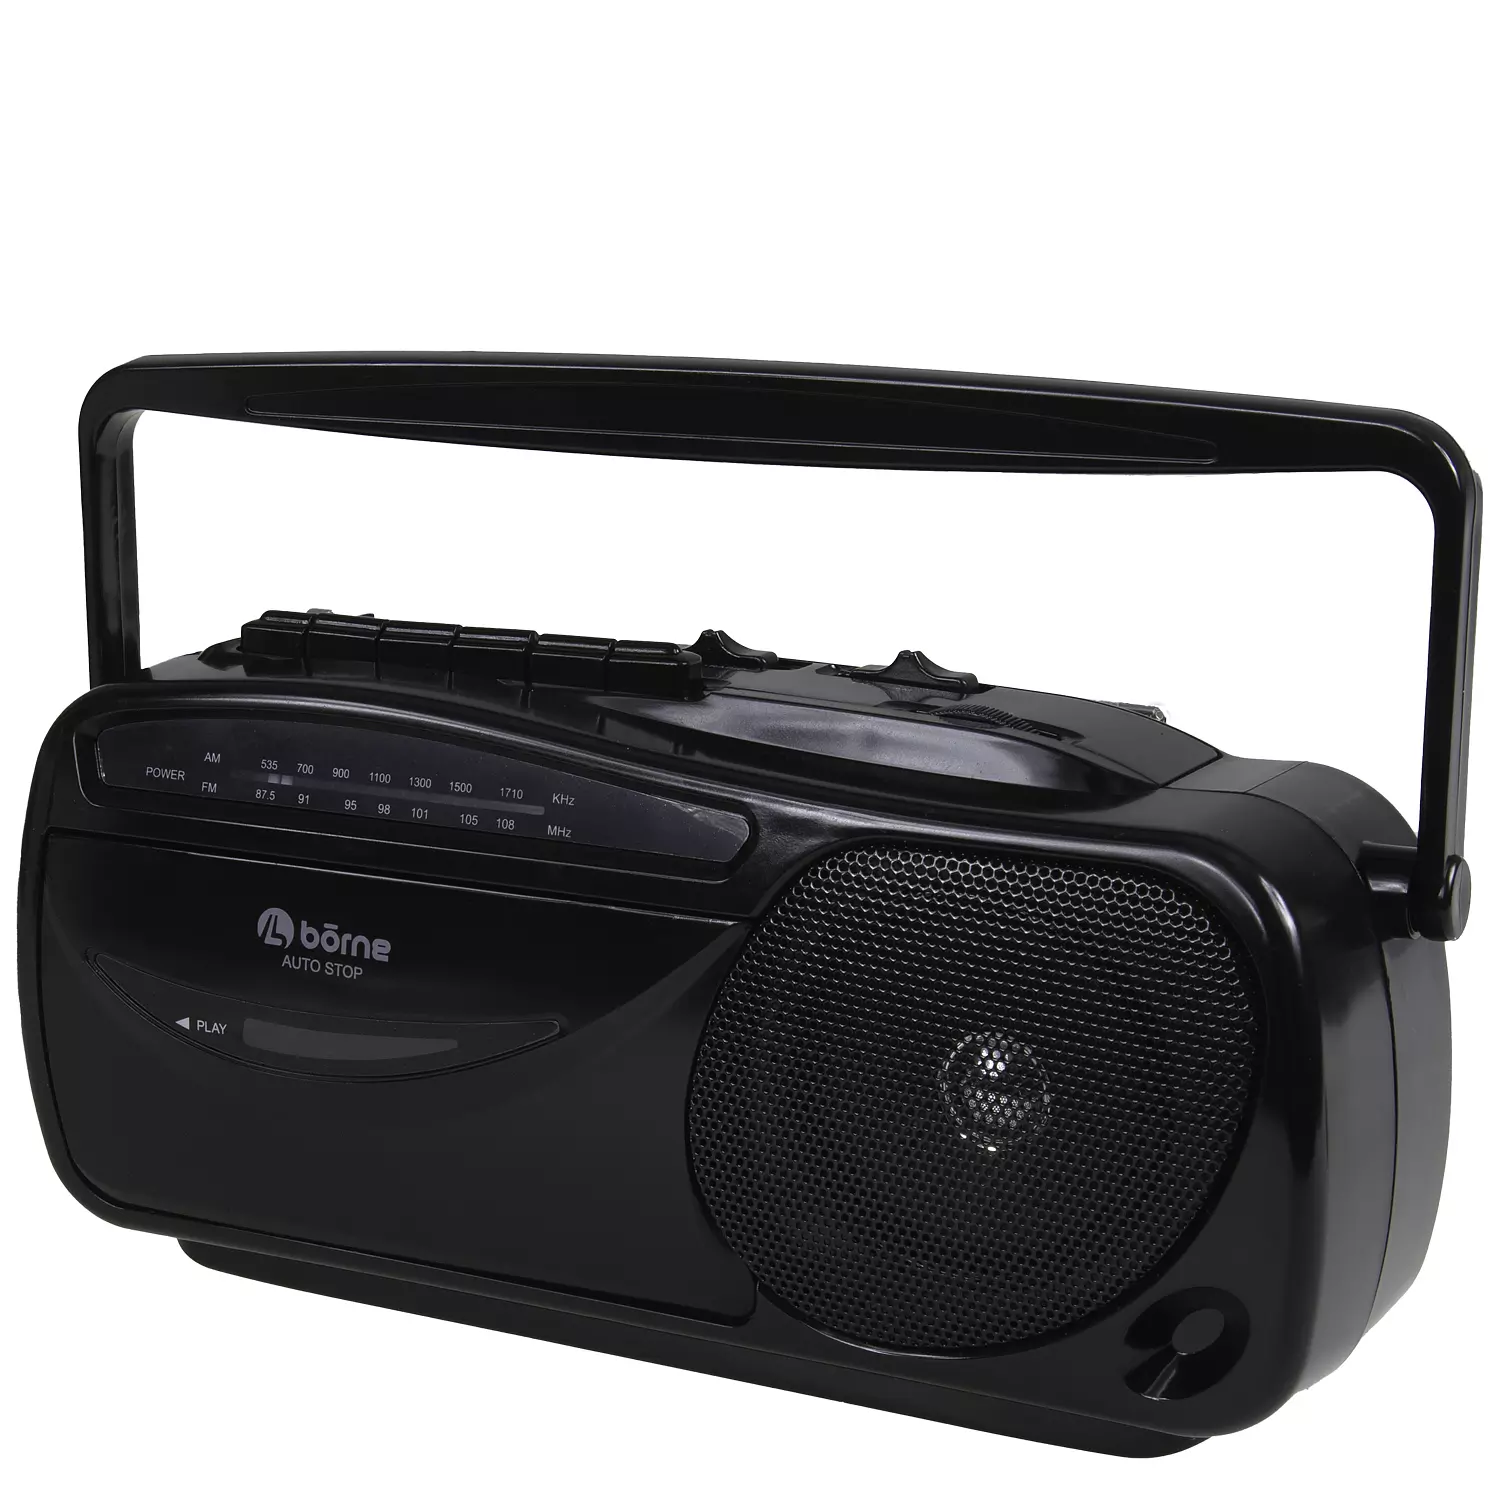 Borne - lecteur et enregistreur de cassettes portatif avec radio am/fm.  Colour: black, Fr